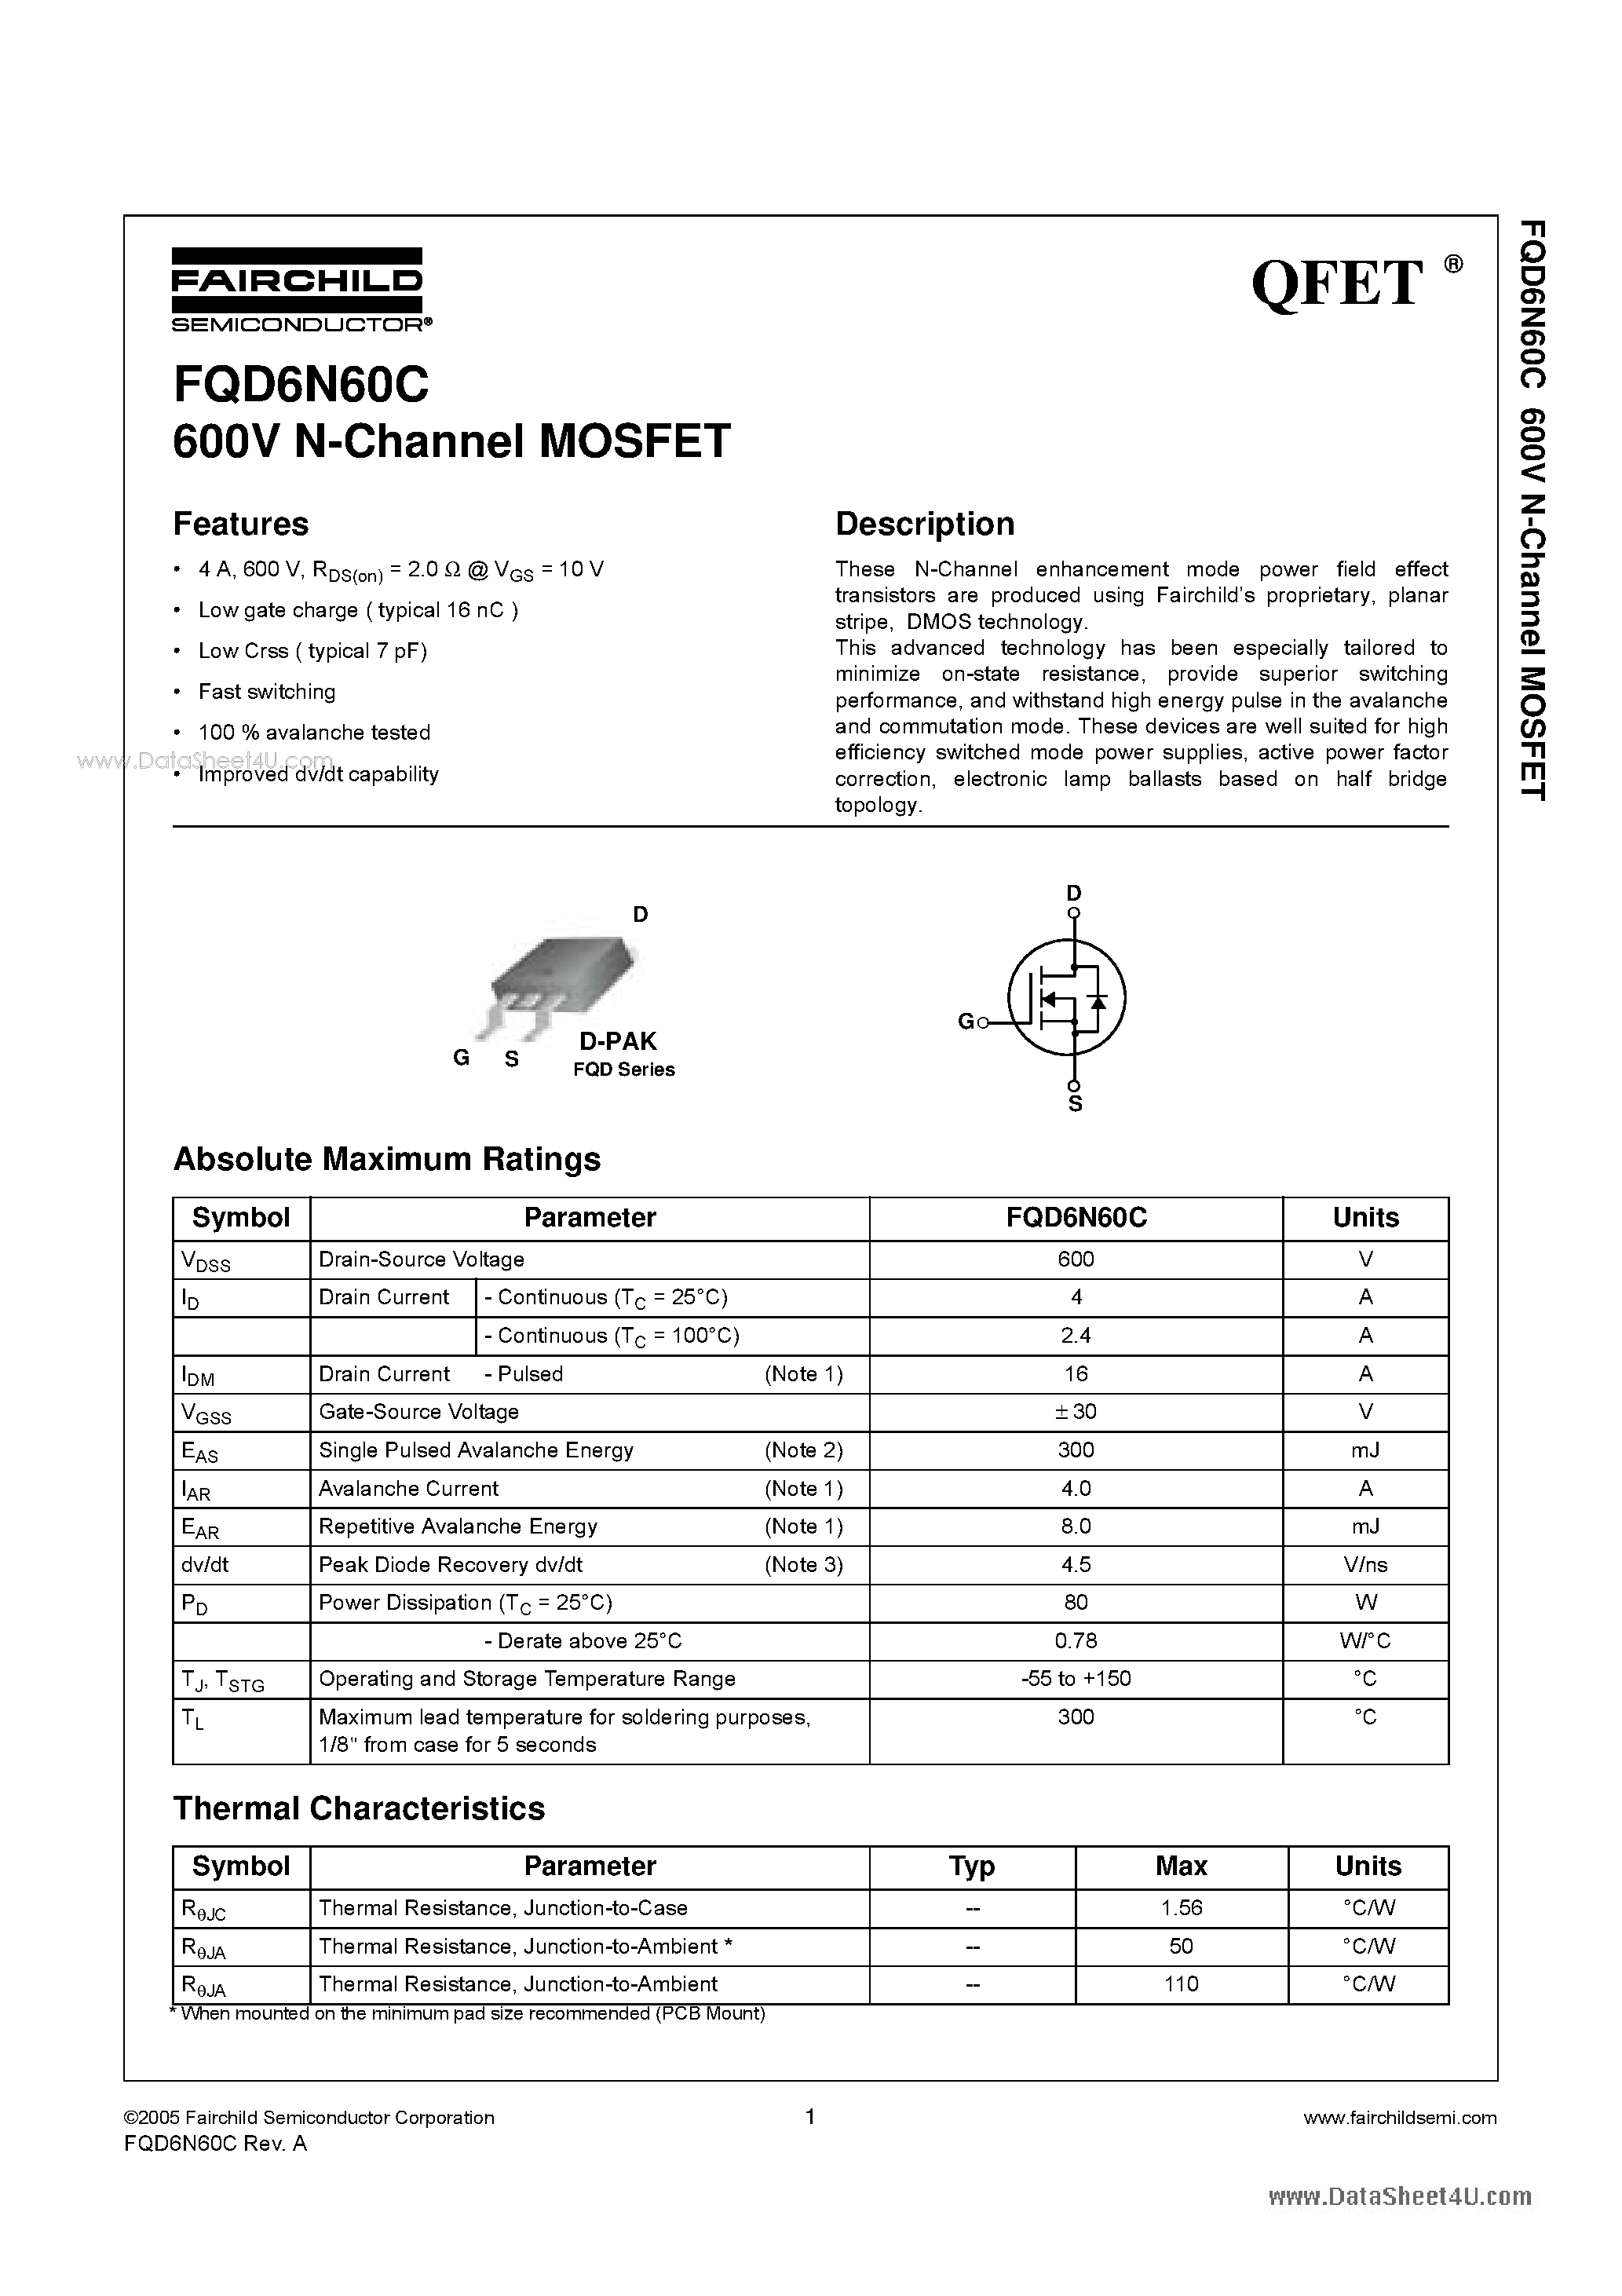 Даташит FQD6N60C - 600V N-Channel MOSFET страница 1